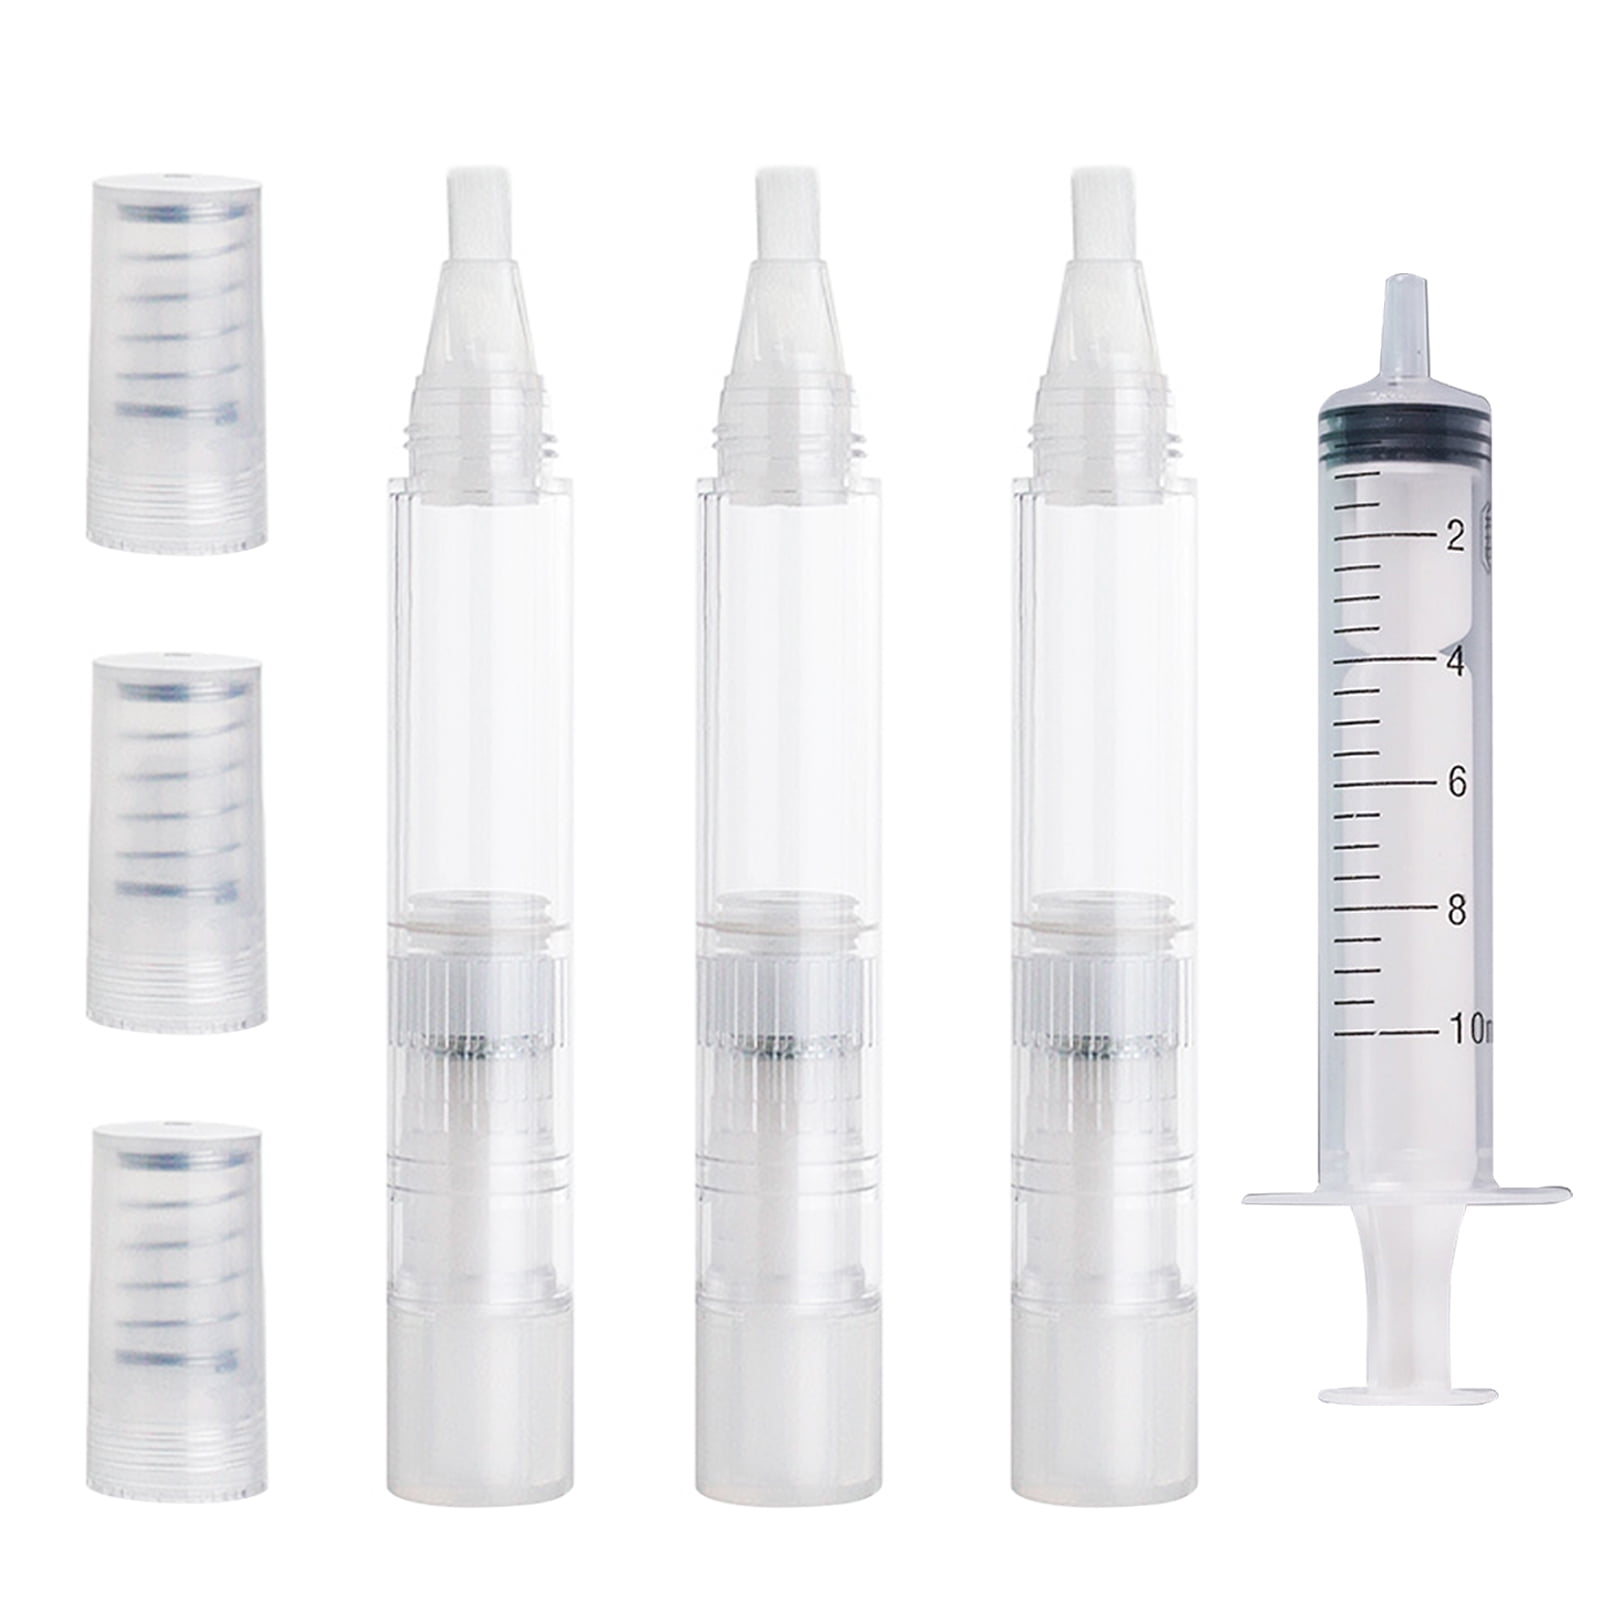 TiGilt Touch Up Paint Pens 3-Pack - Refillable Paint Brush Pens